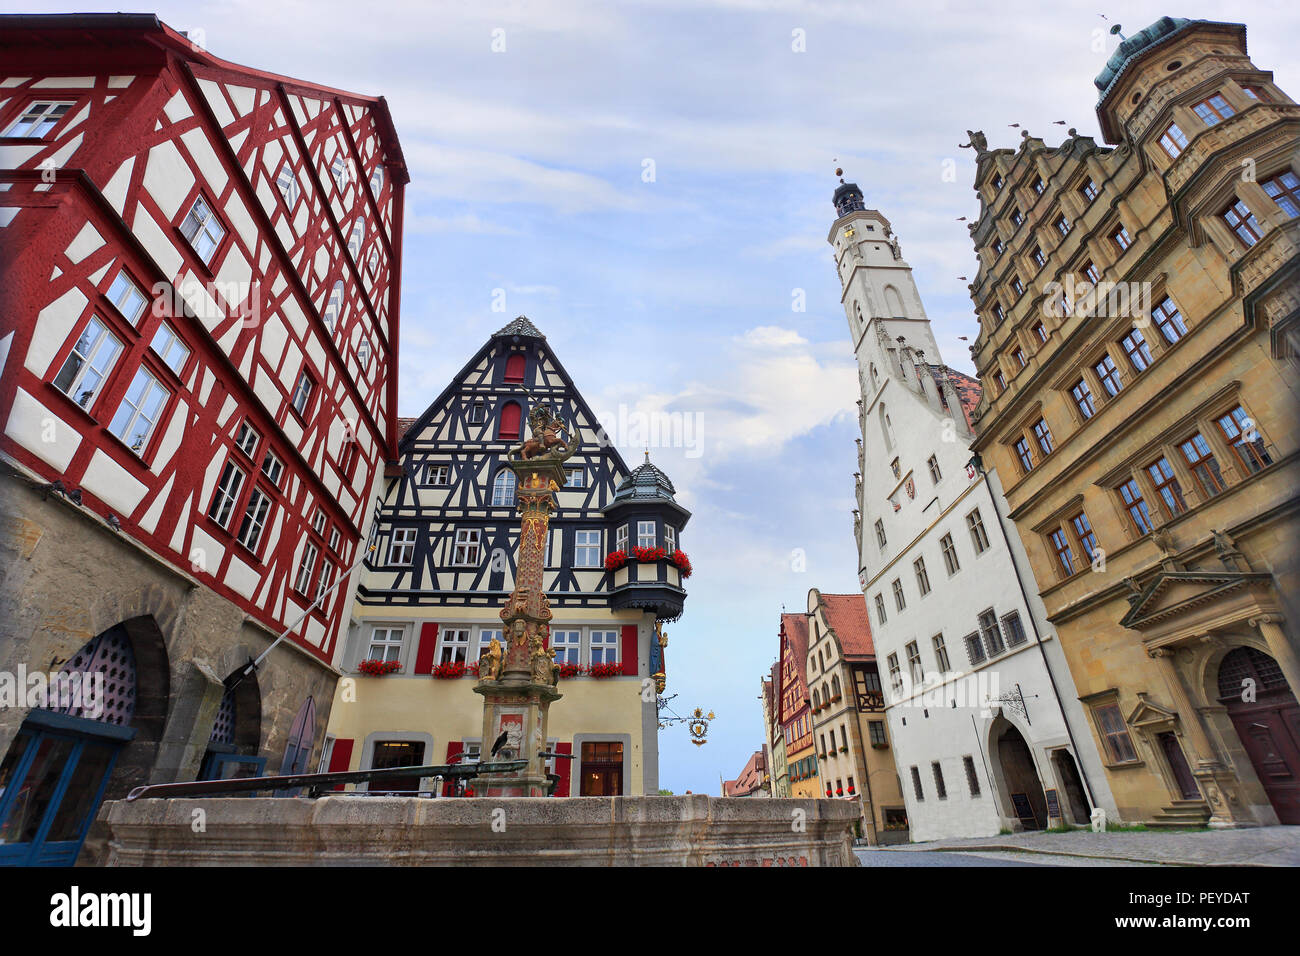 Traditionelle Architektur in Rothenburg o.d. Tauber, Mittelfranken, Bayern, Deutschland Stockfoto